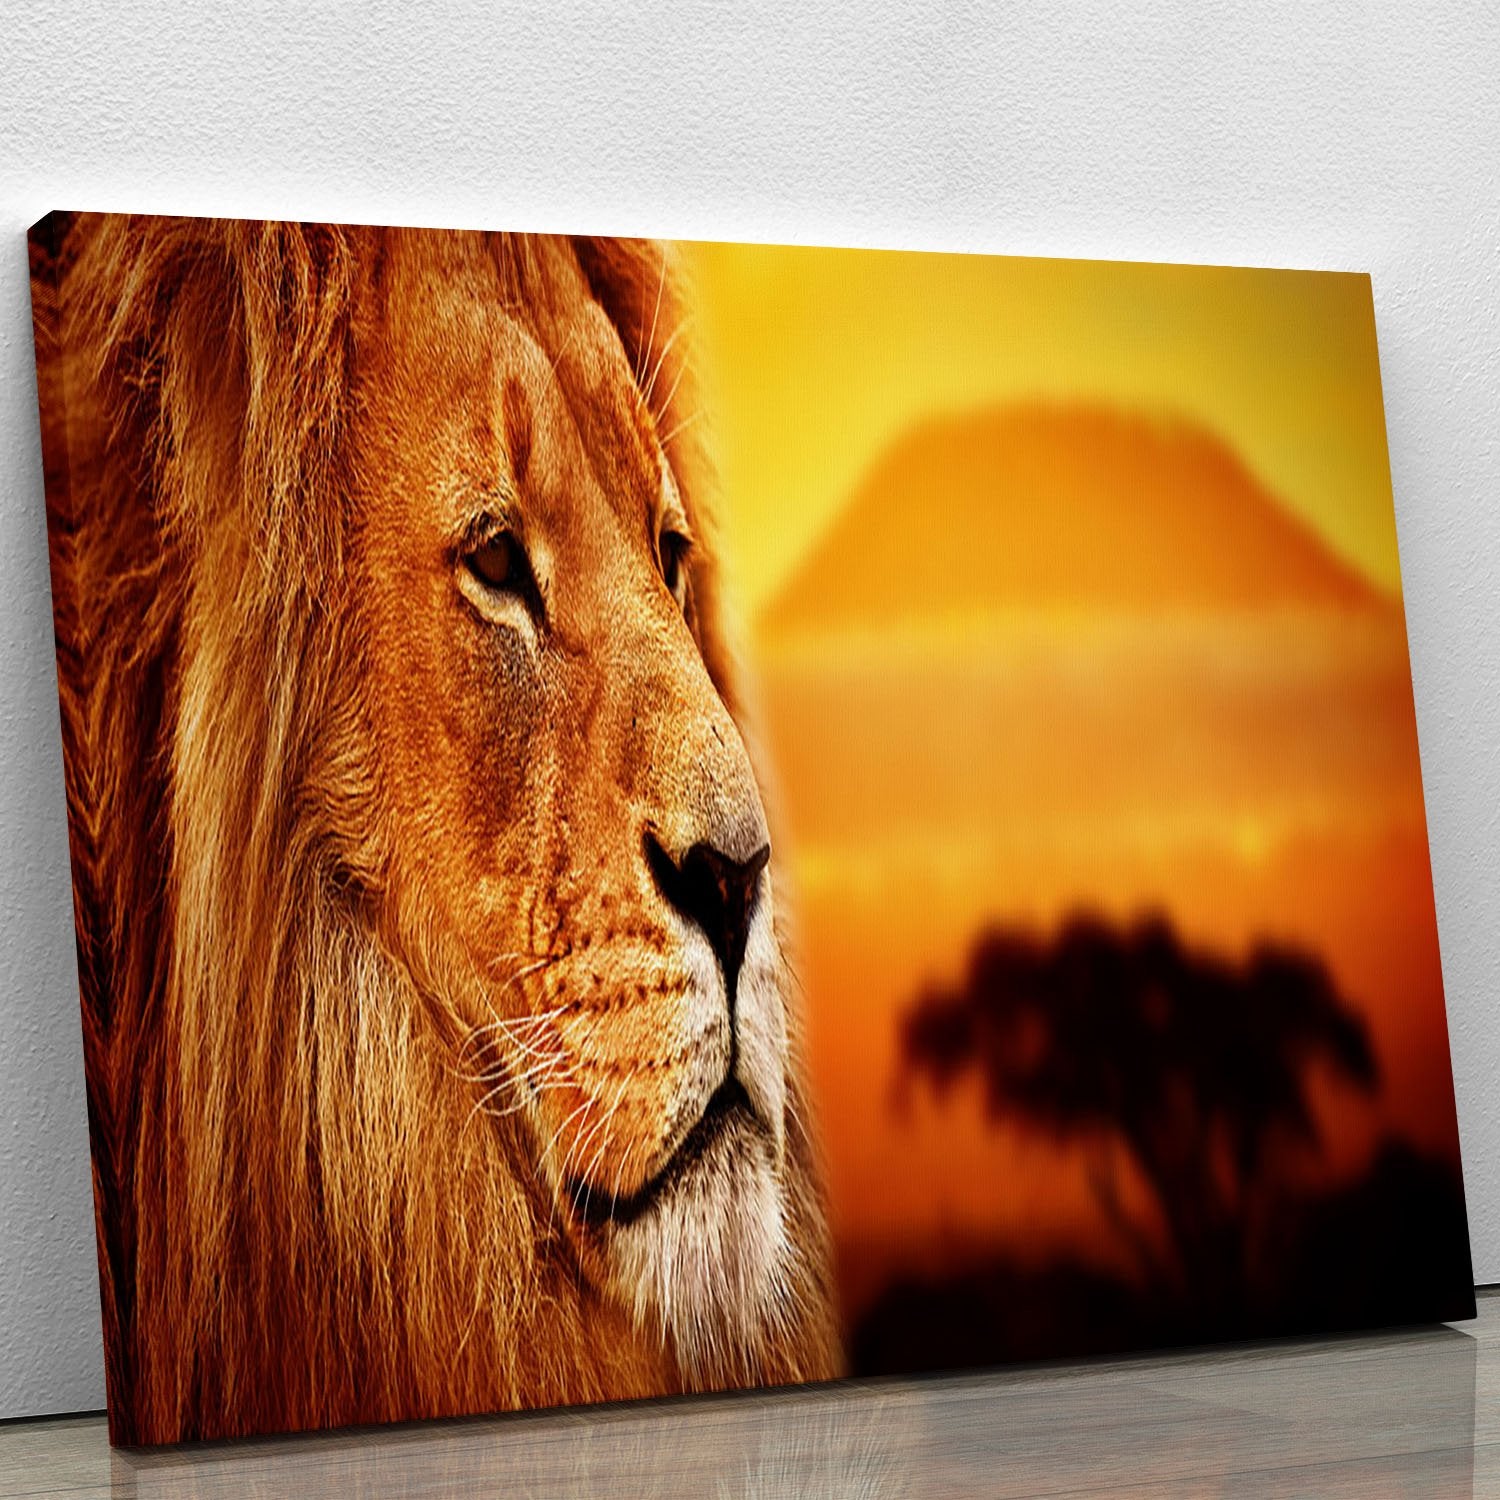 Lion portrait on savanna landscape Canvas Print or Poster